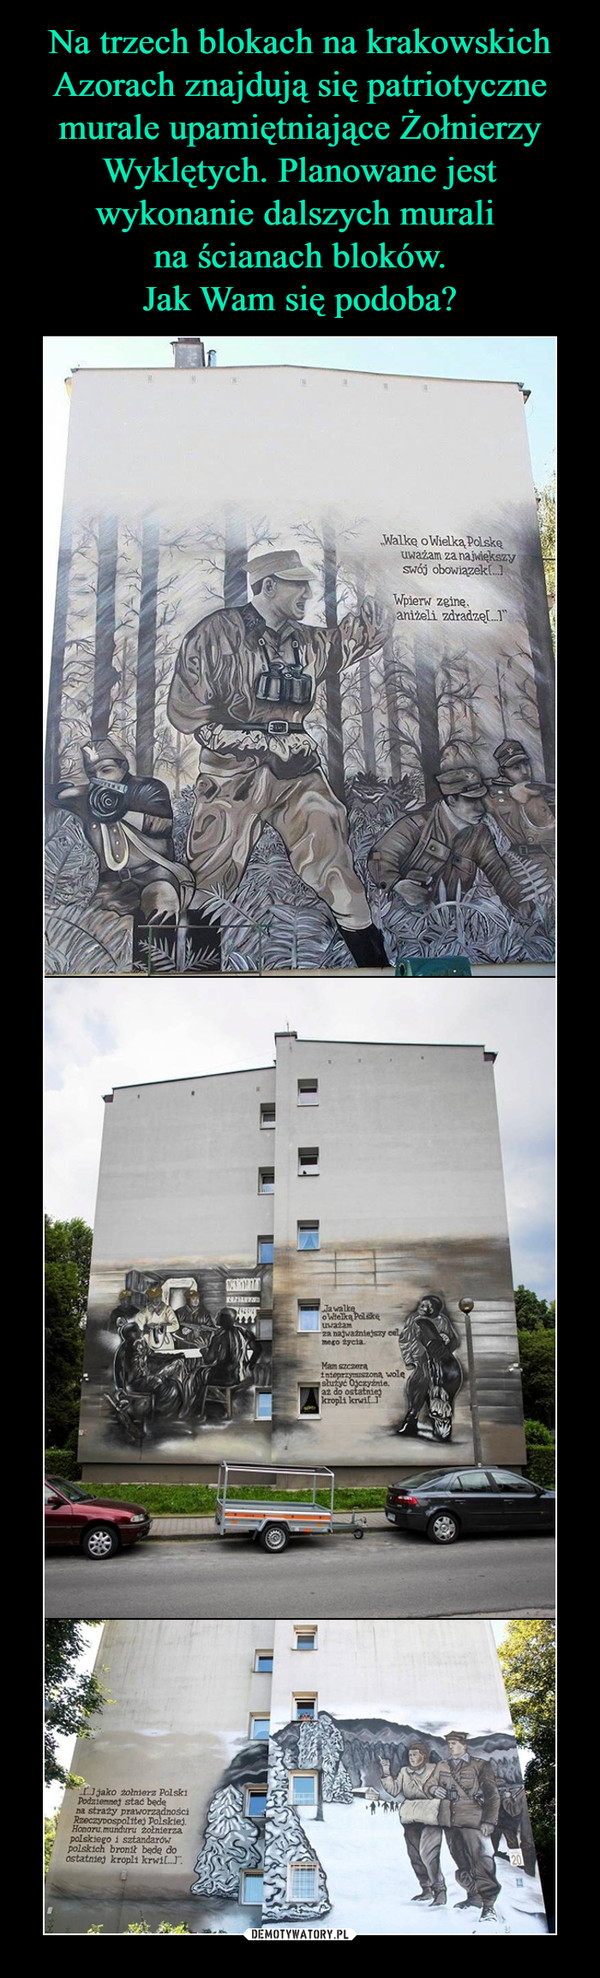 Na trzech blokach na krakowskich Azorach znajdują się patriotyczne murale upamiętniające Żołnierzy Wyklętych. Planowane jest wykonanie dalszych murali 
na ścianach bloków.
Jak Wam się podoba?